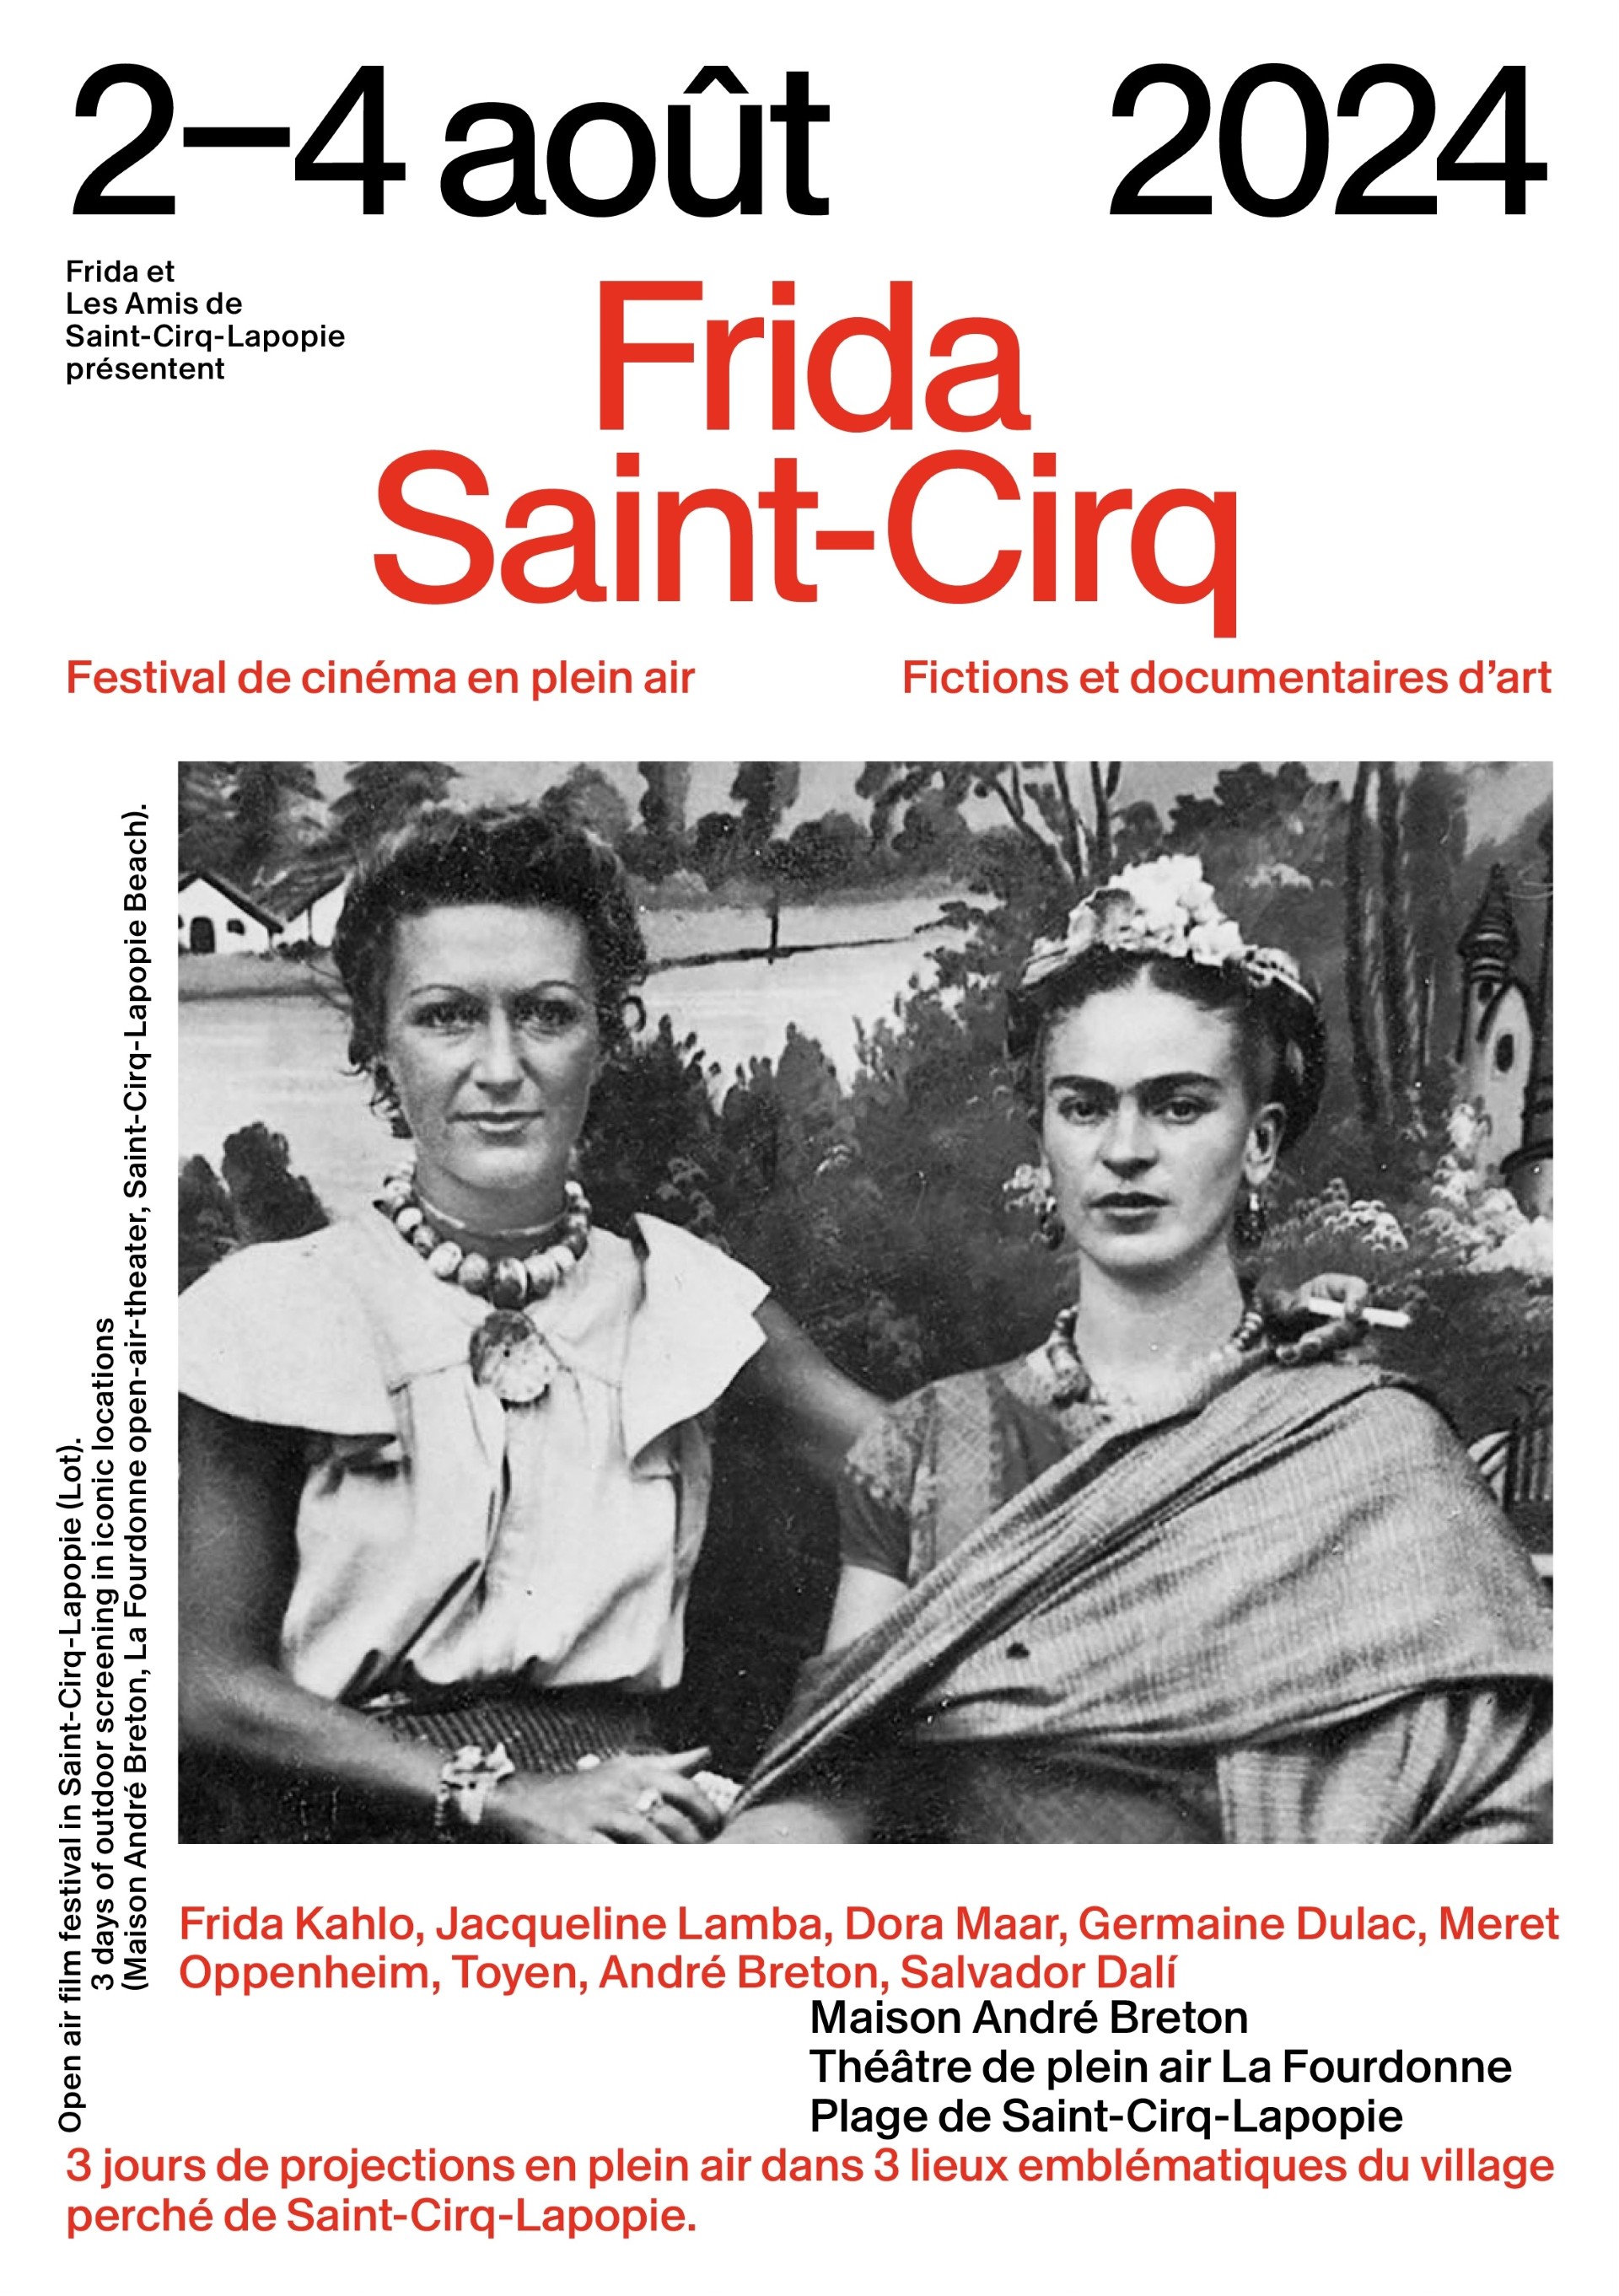 Figeac : Frida à Saint-Cirq - Festival de cinéma en plein air